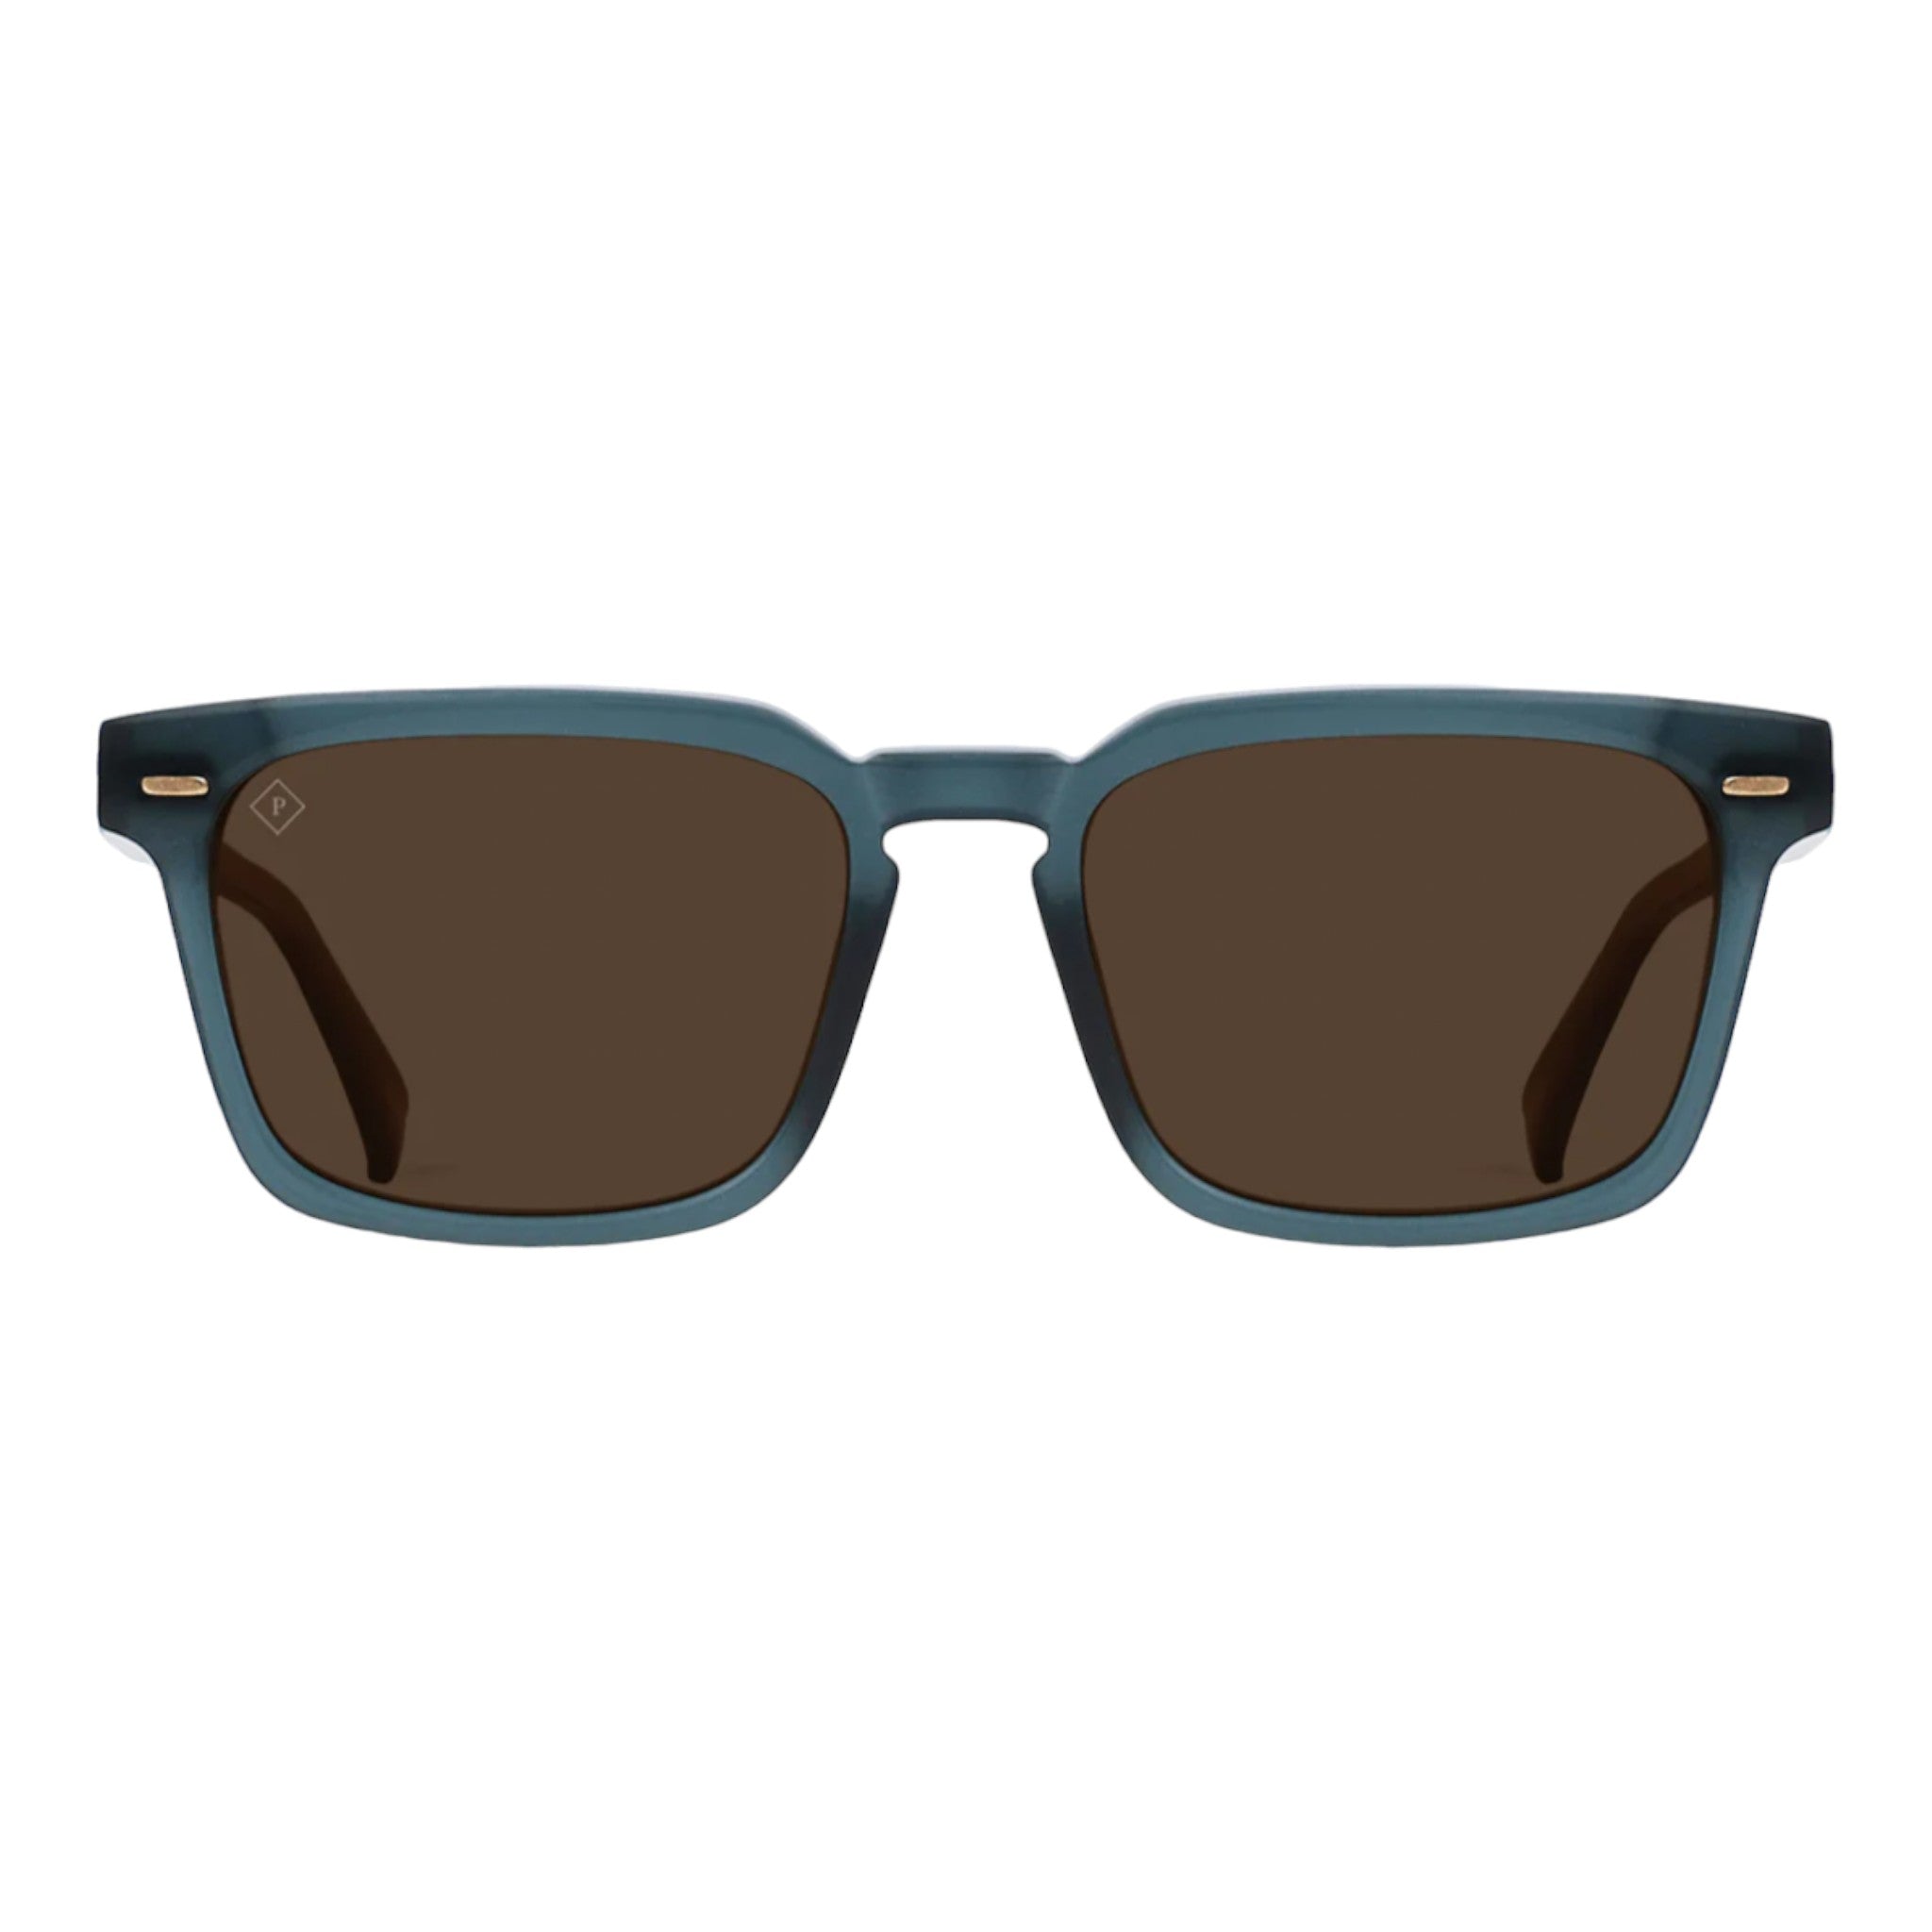 Raen - Adin 54 Sunglasses - Cirus / Vibrant Brown Polarized